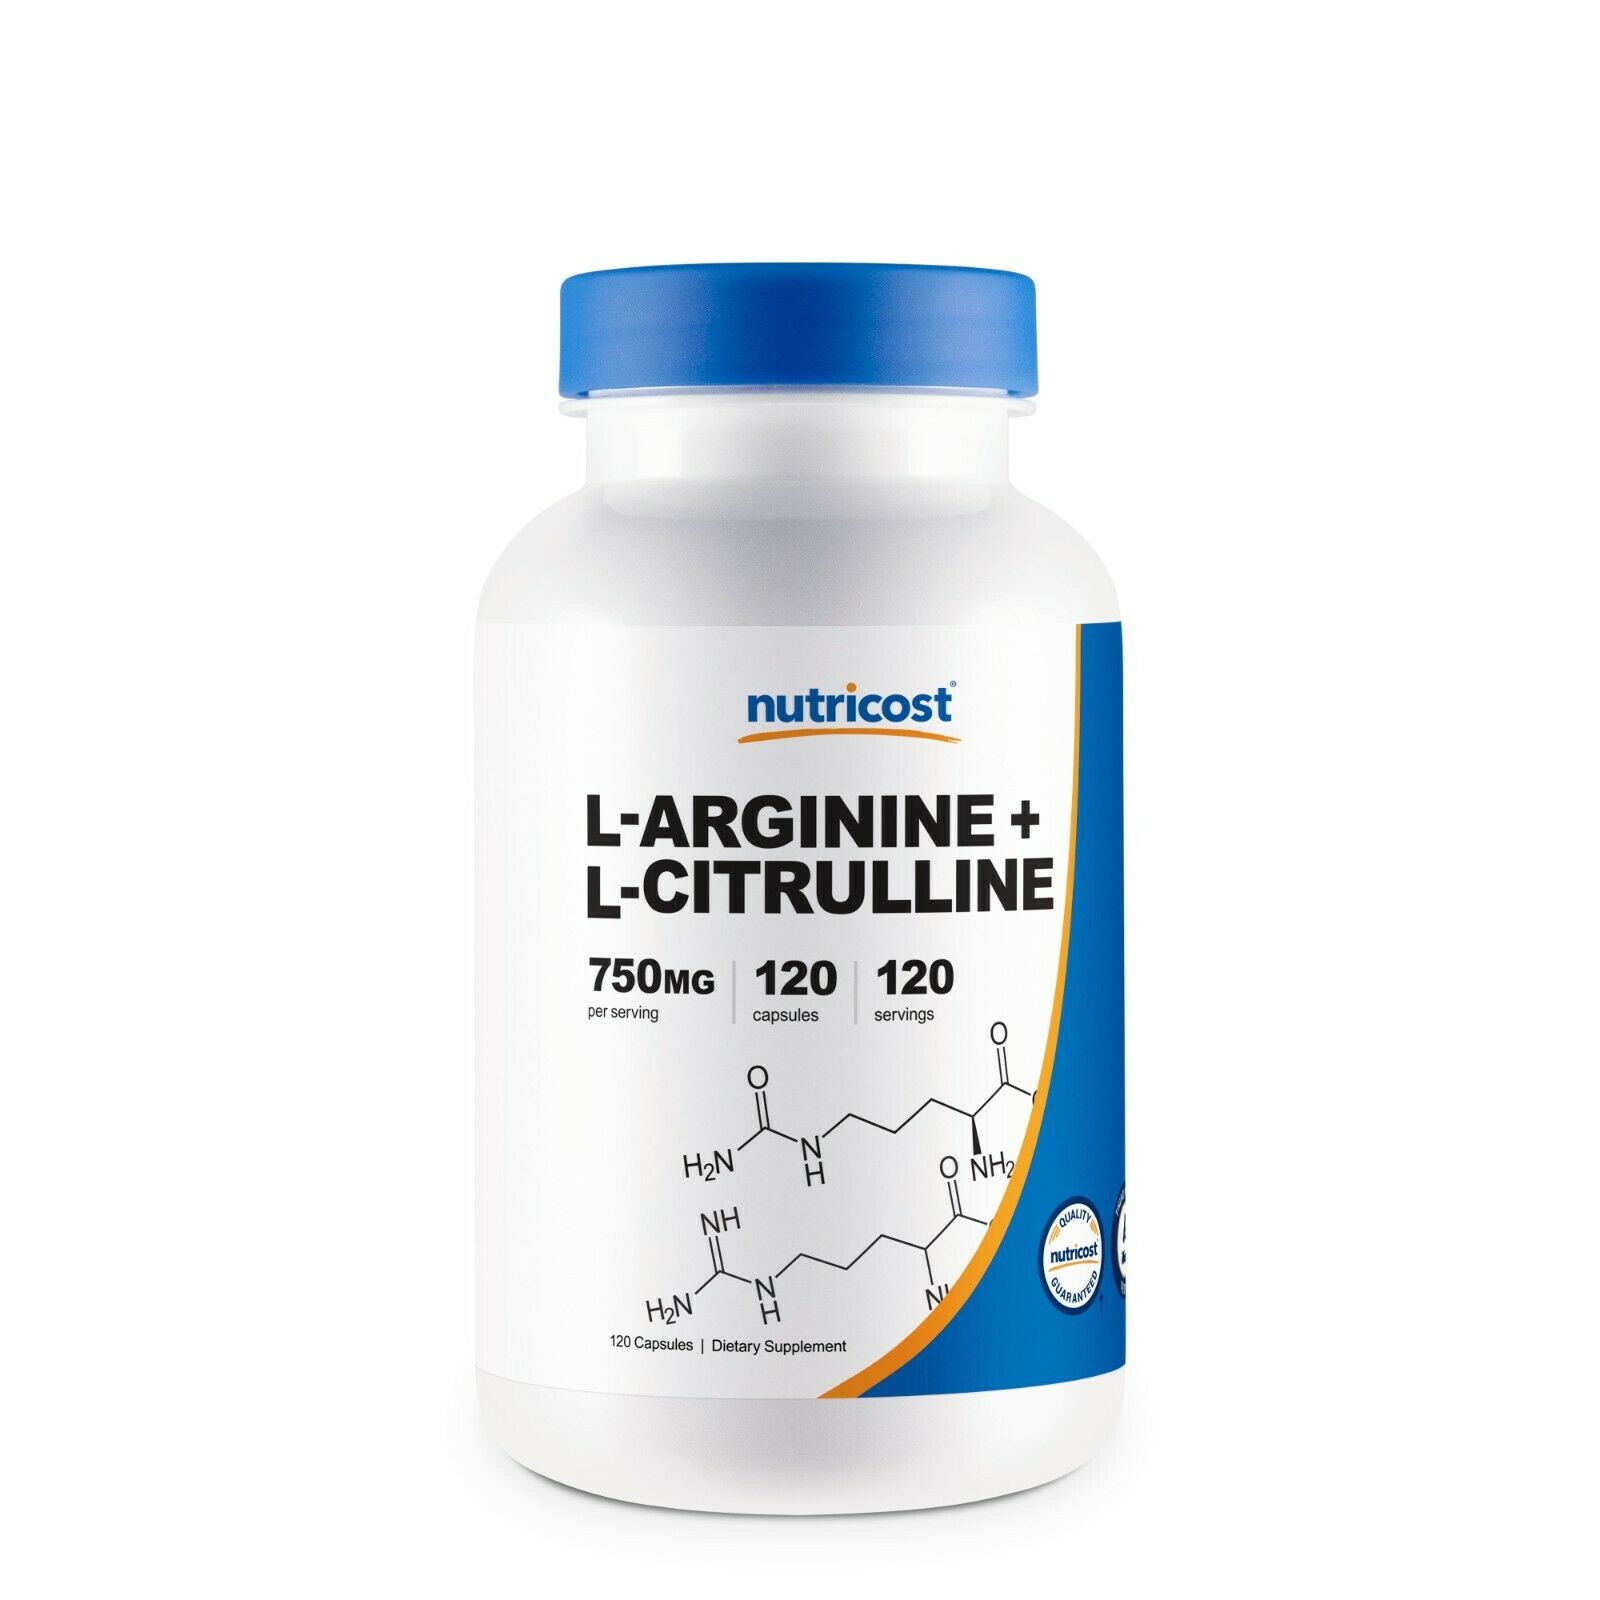 Nutricost L-arginine L-citrulline Complex 750mg, 120 Capsules - Non-gmo